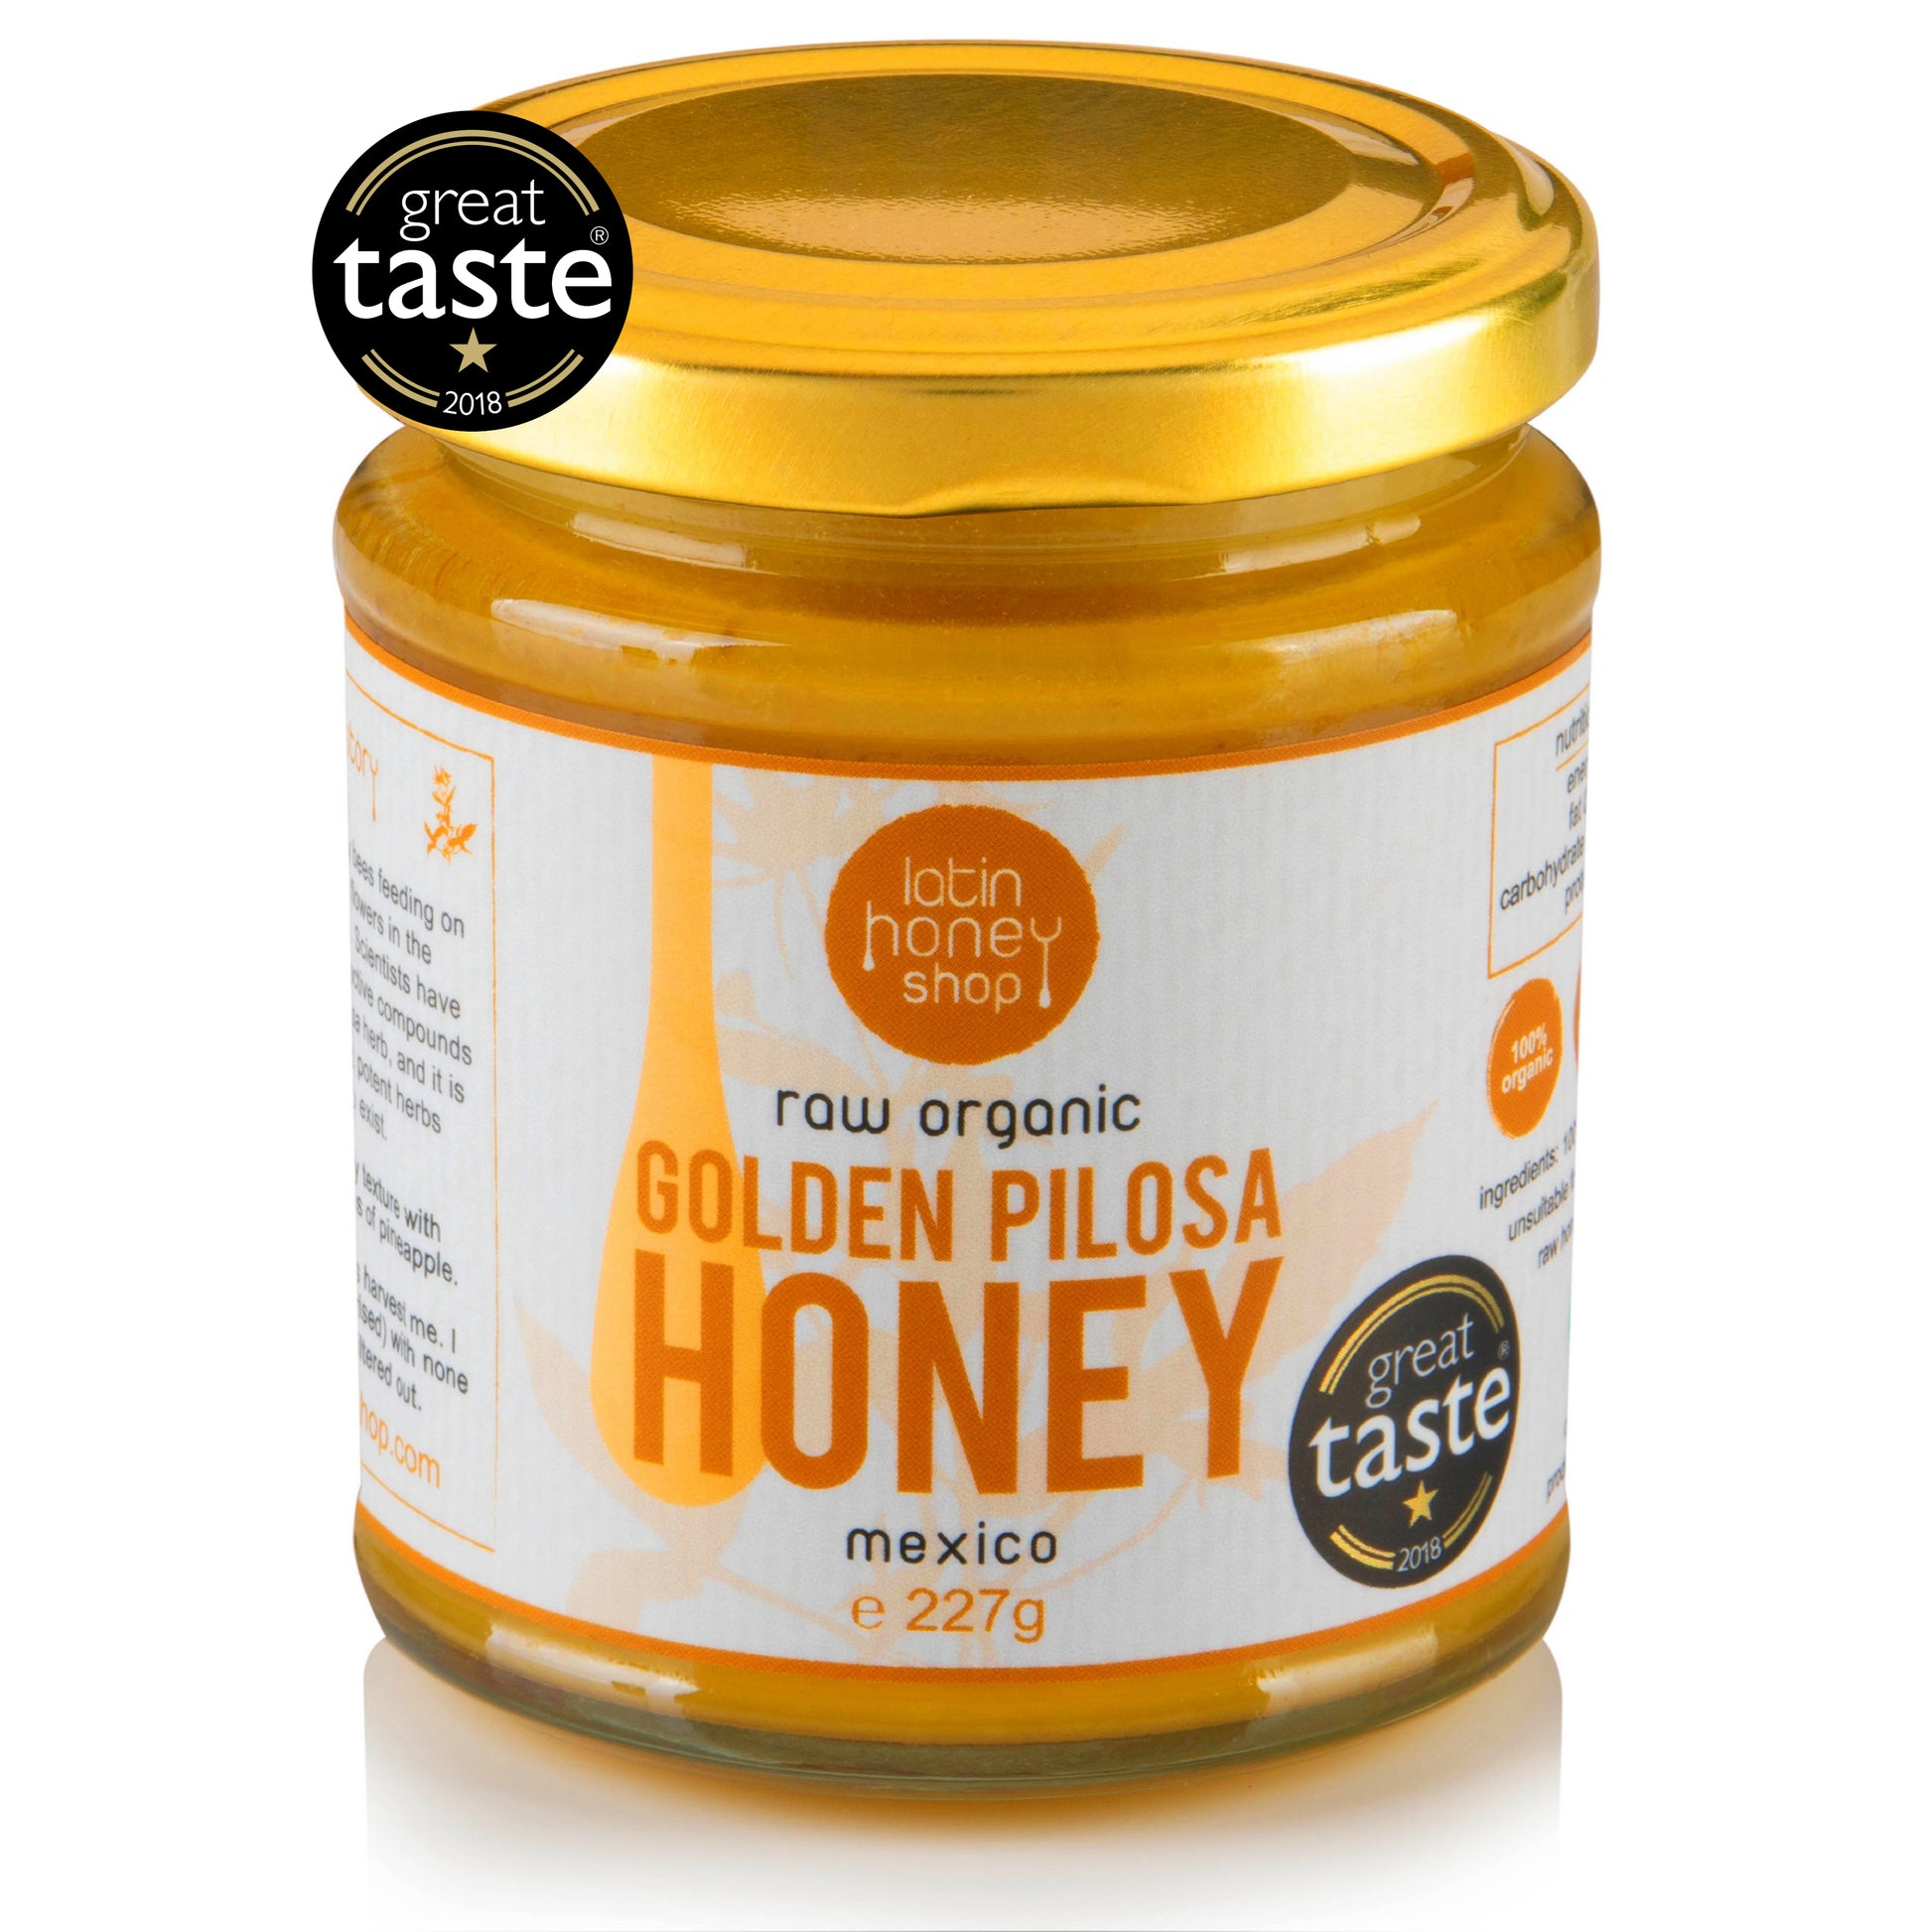 Latin Honey Shop Rå Økologisk Golden Pilosa Honning fra Mexico